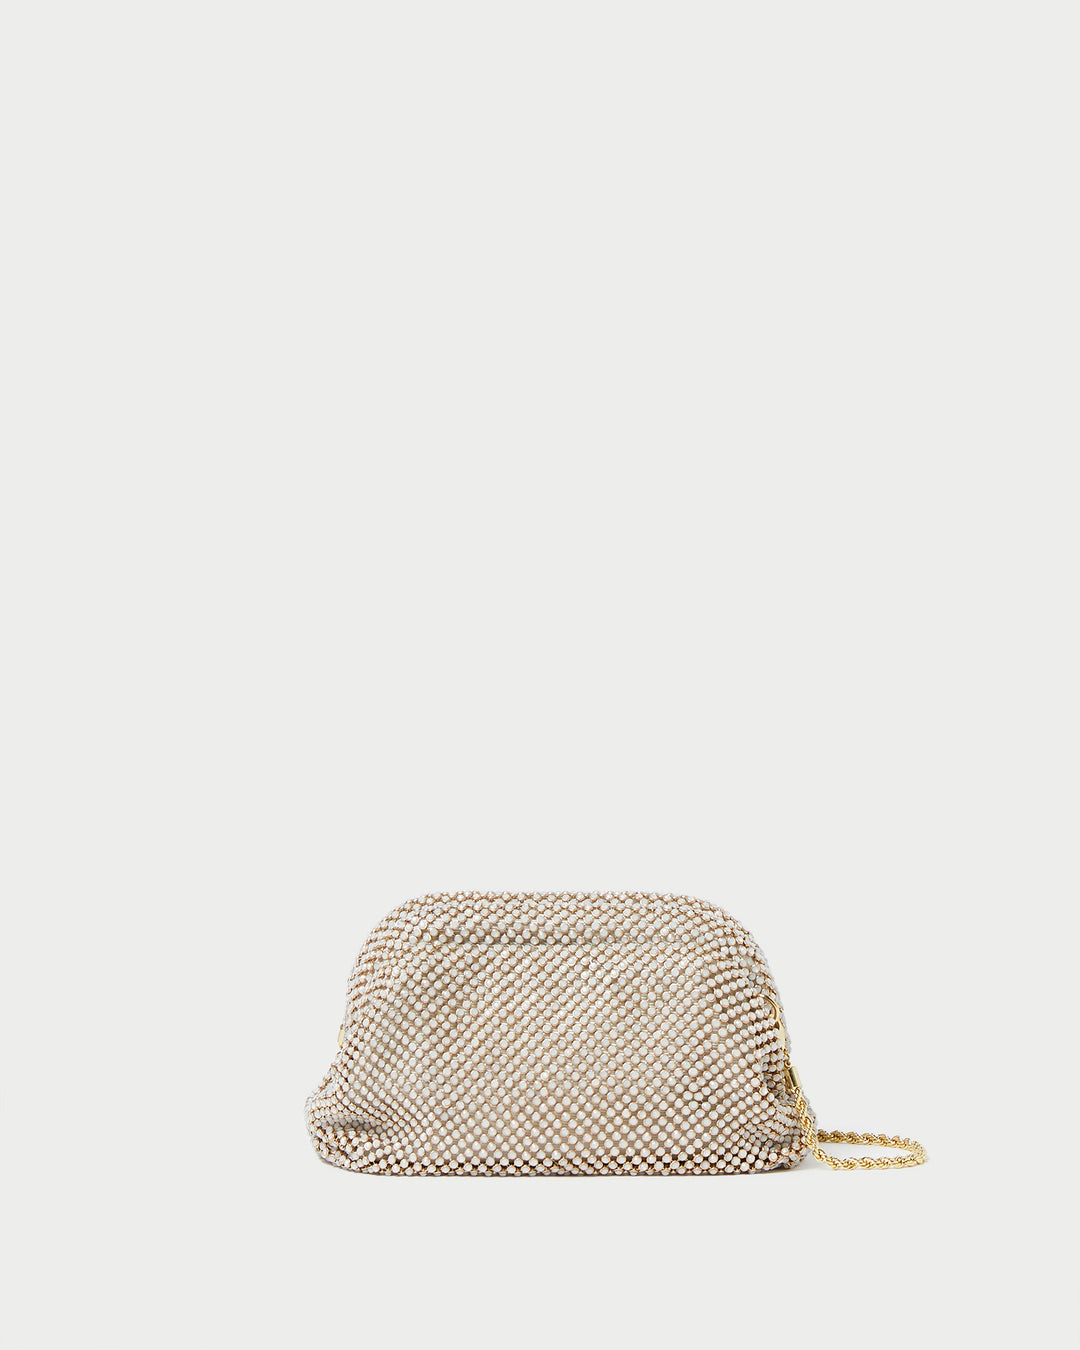 Loeffler Randall | Doris Gold Diamanté Mini Pouch I Clutches I Handbags